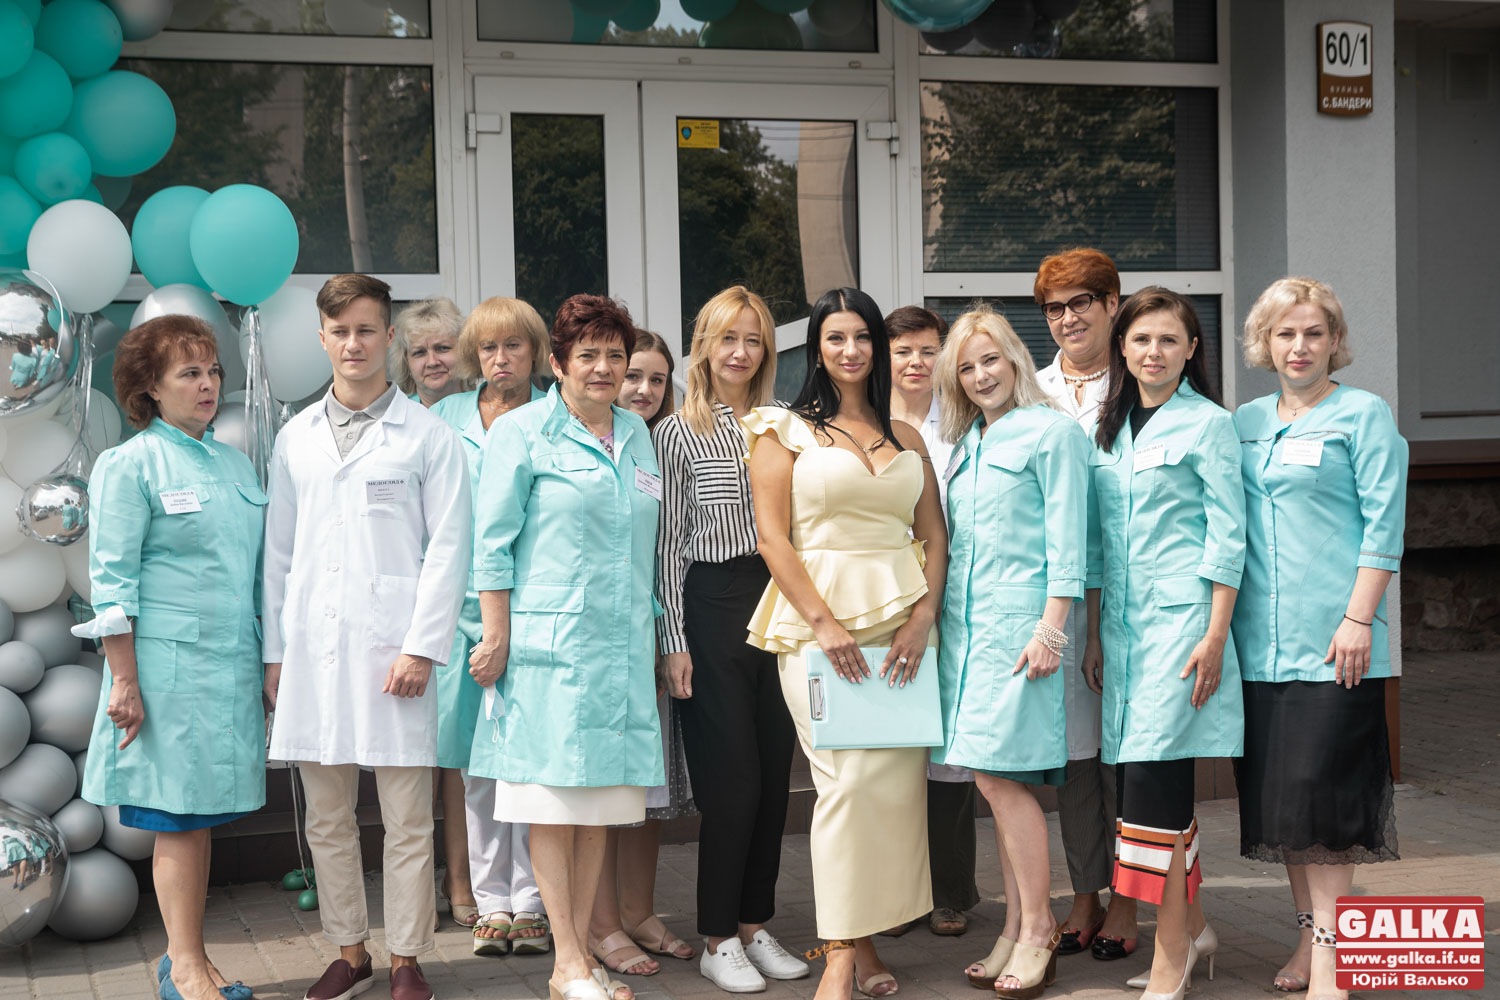 Виїзні медогляди та кращі лікарі: в Івано-Франківську відкрився медичний центр “Медогляд+” (ФОТО)